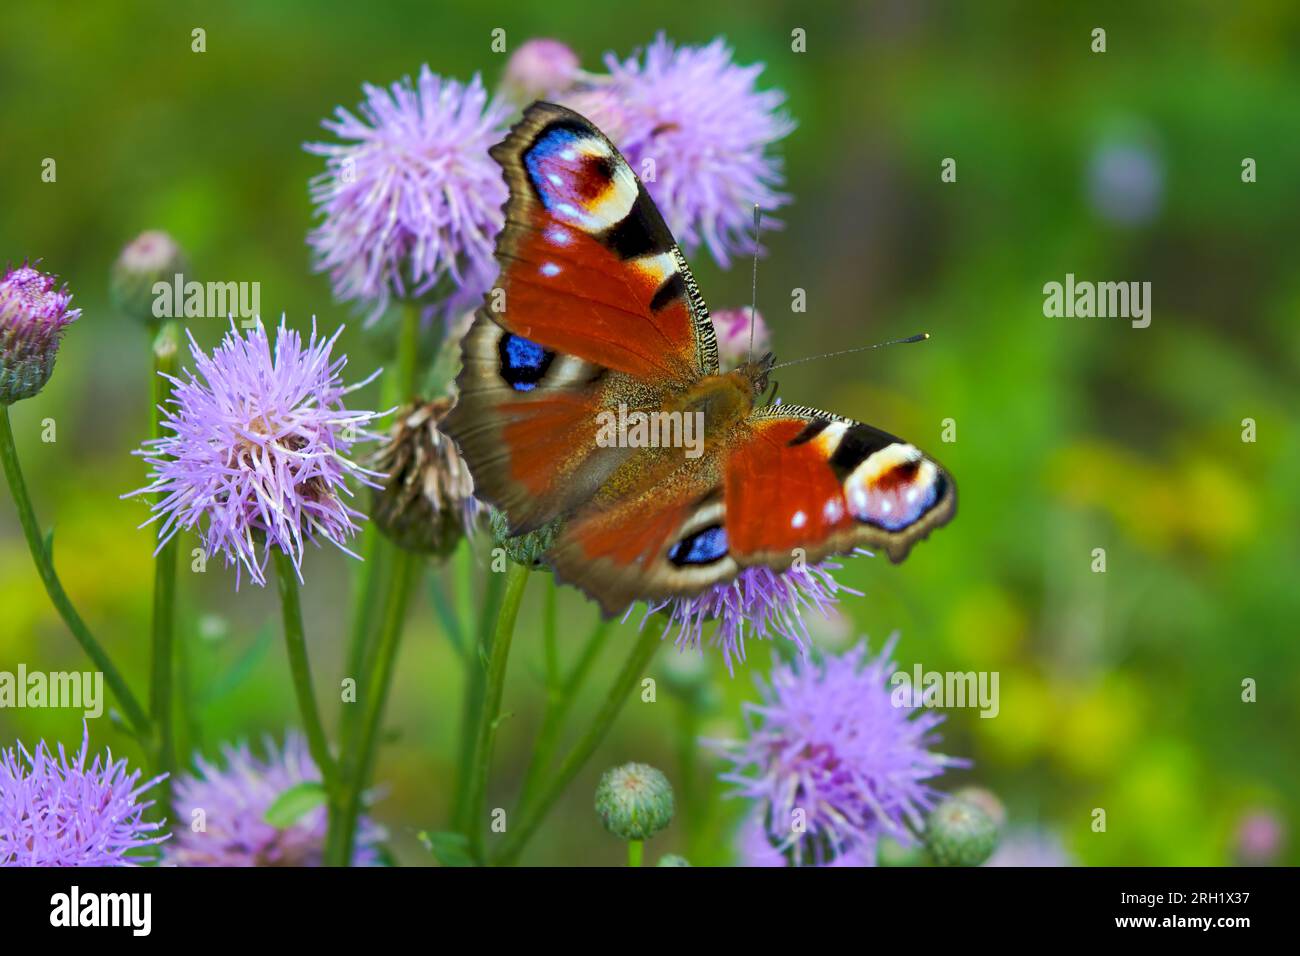 Aglais io o European Peacock Butterfly o Peacock. Mariposa sobre flor. Una mariposa naranja rojo-marrón brillante con manchas azules lila en su extensión Foto de stock